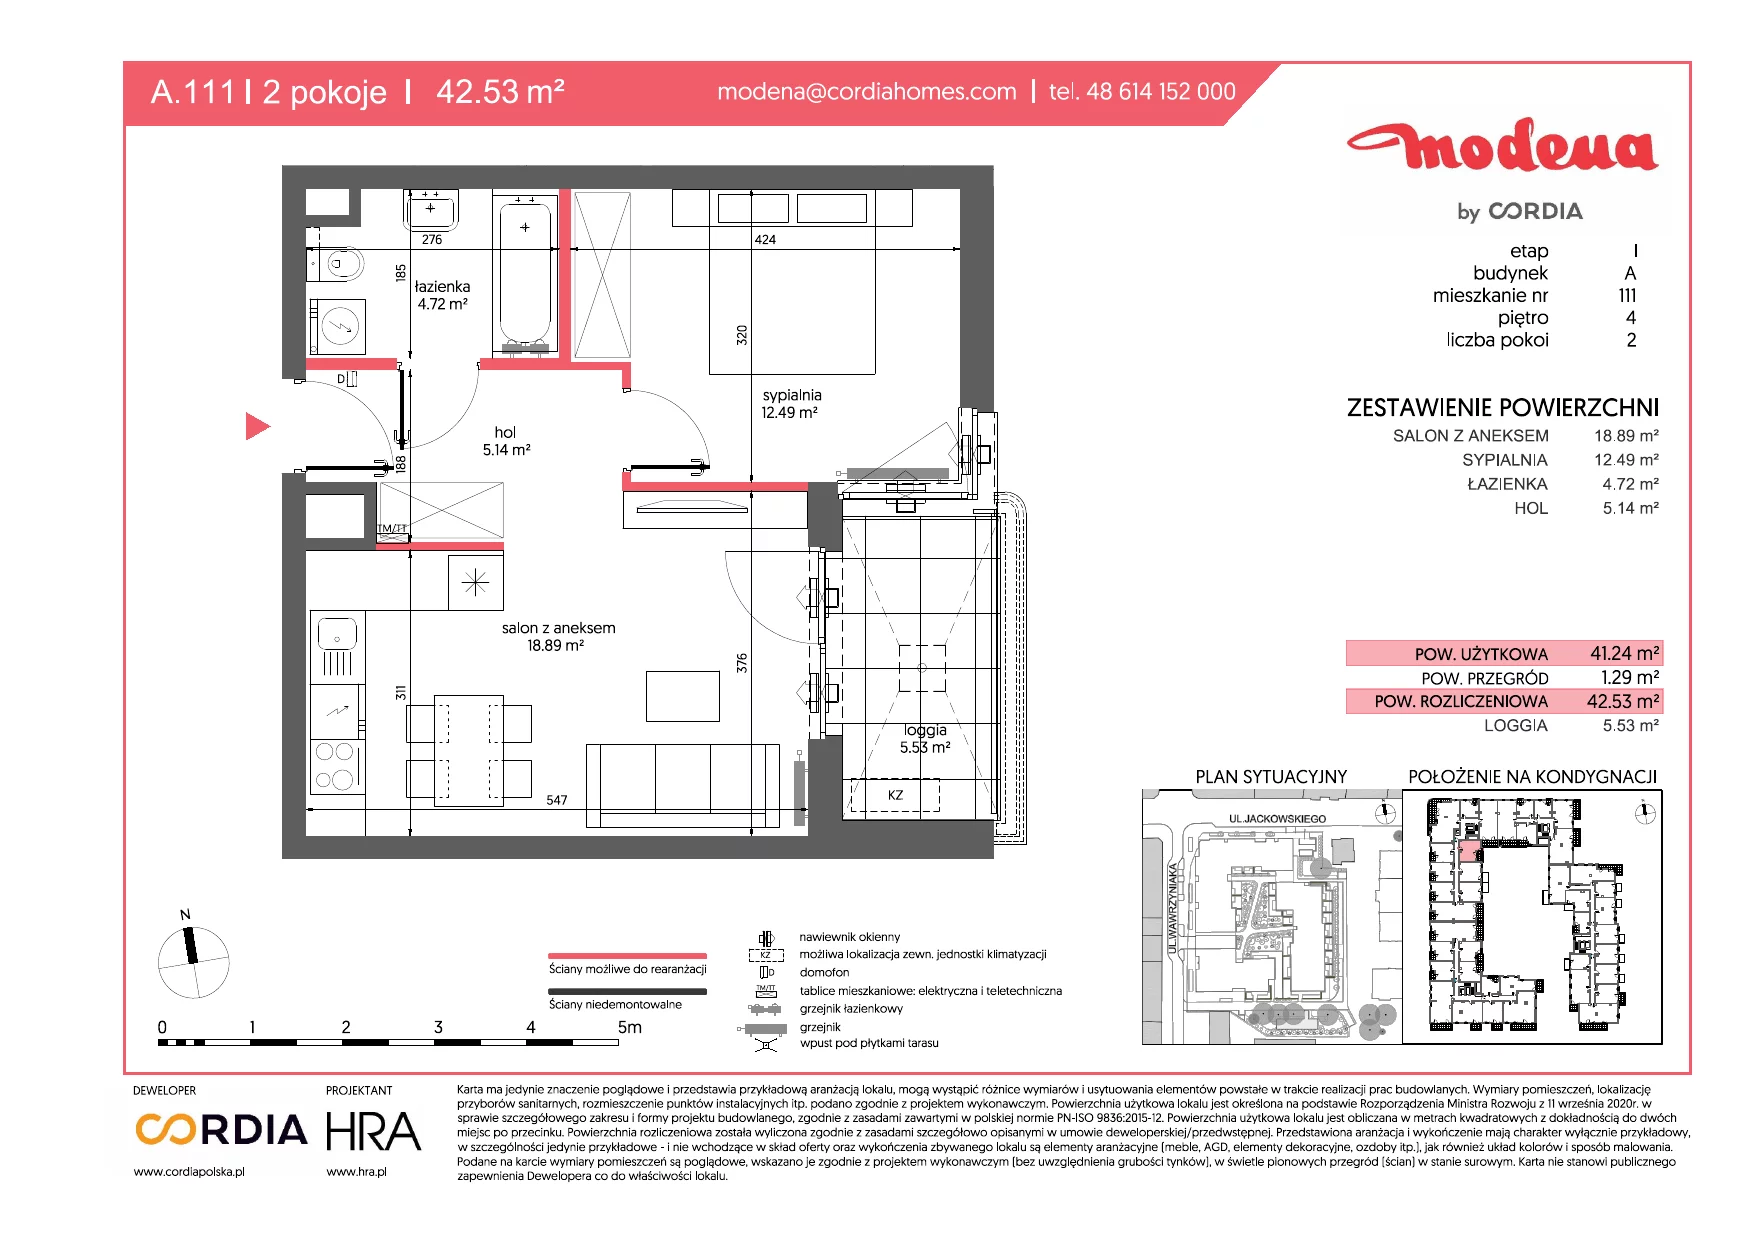 Mieszkanie 42,53 m², piętro 4, oferta nr A.111, Modena, Poznań, Jeżyce, Jeżyce, ul. Jackowskiego 24